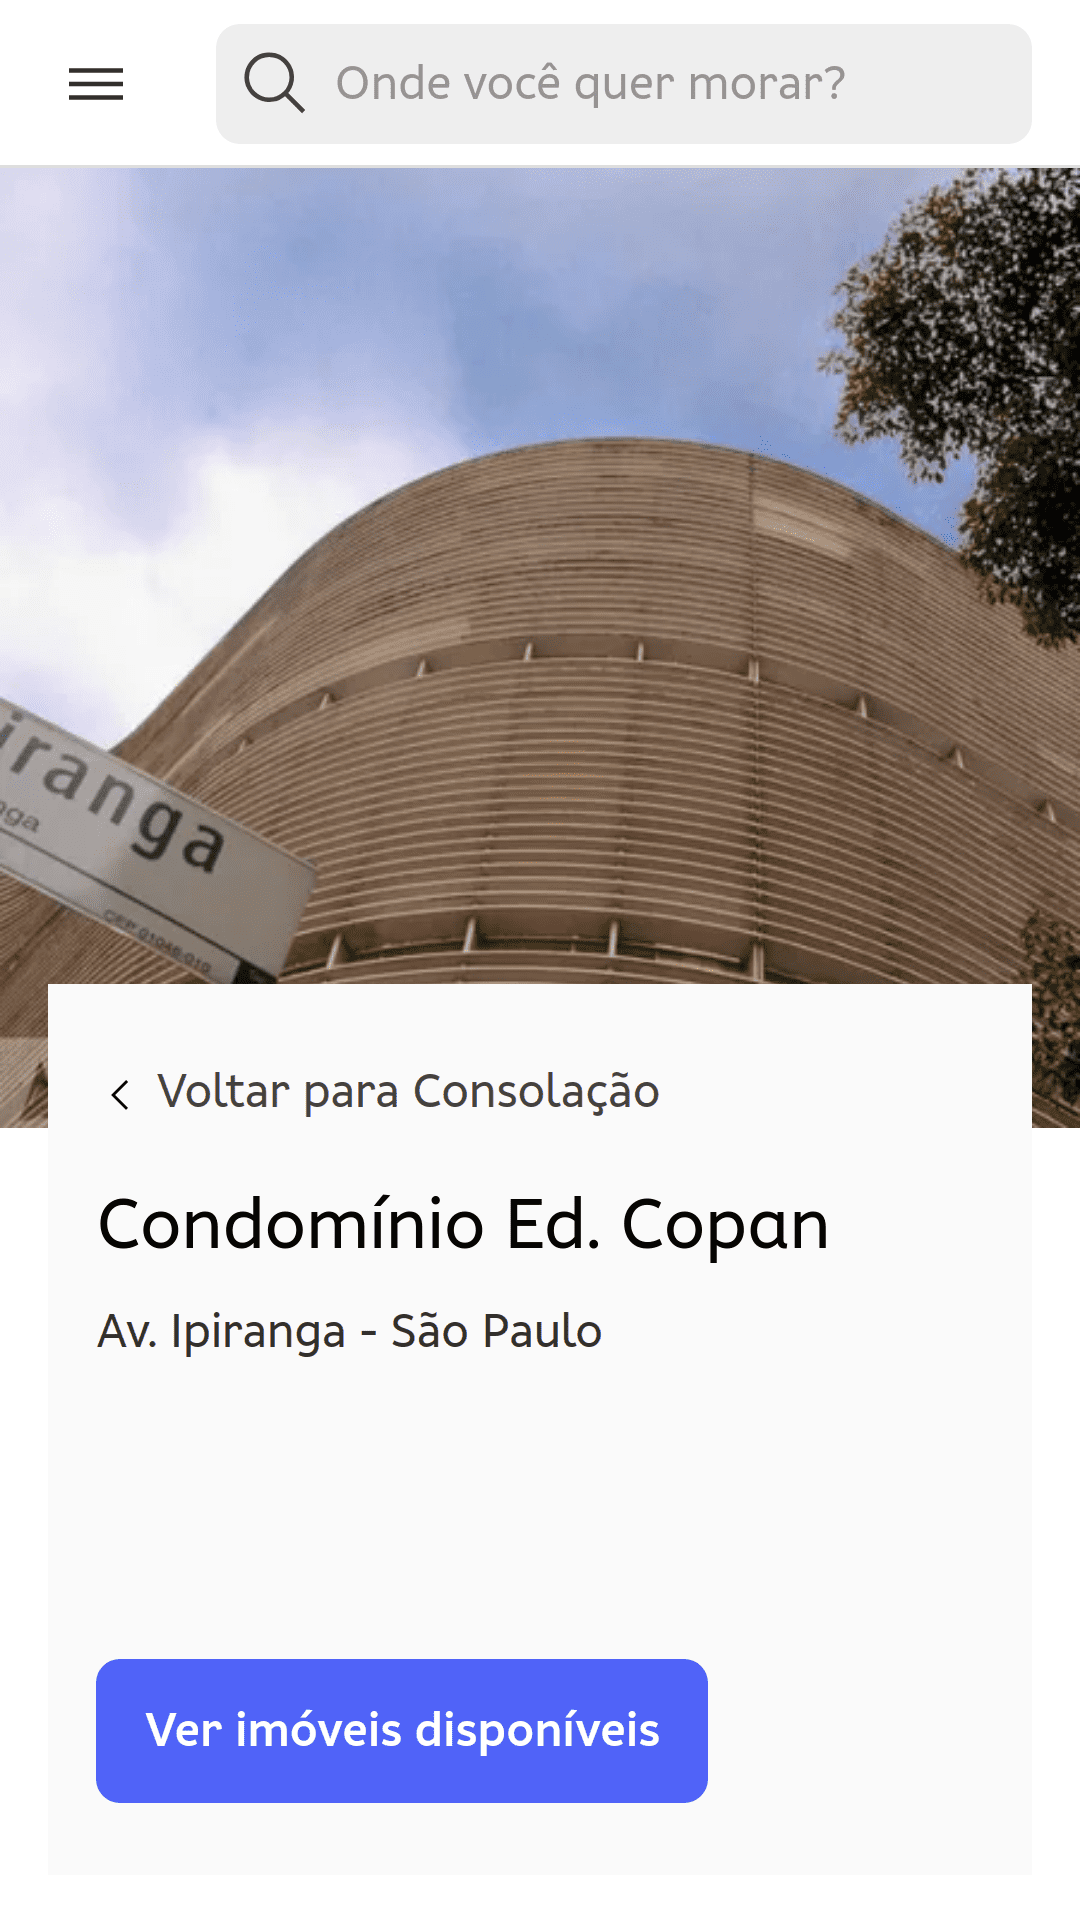 Страница кондоминиума Edificio Copan (Сан-Паулу, Бразилия). На фотографии, сделанной с уровня земли, видны изгибы конструкции здания.